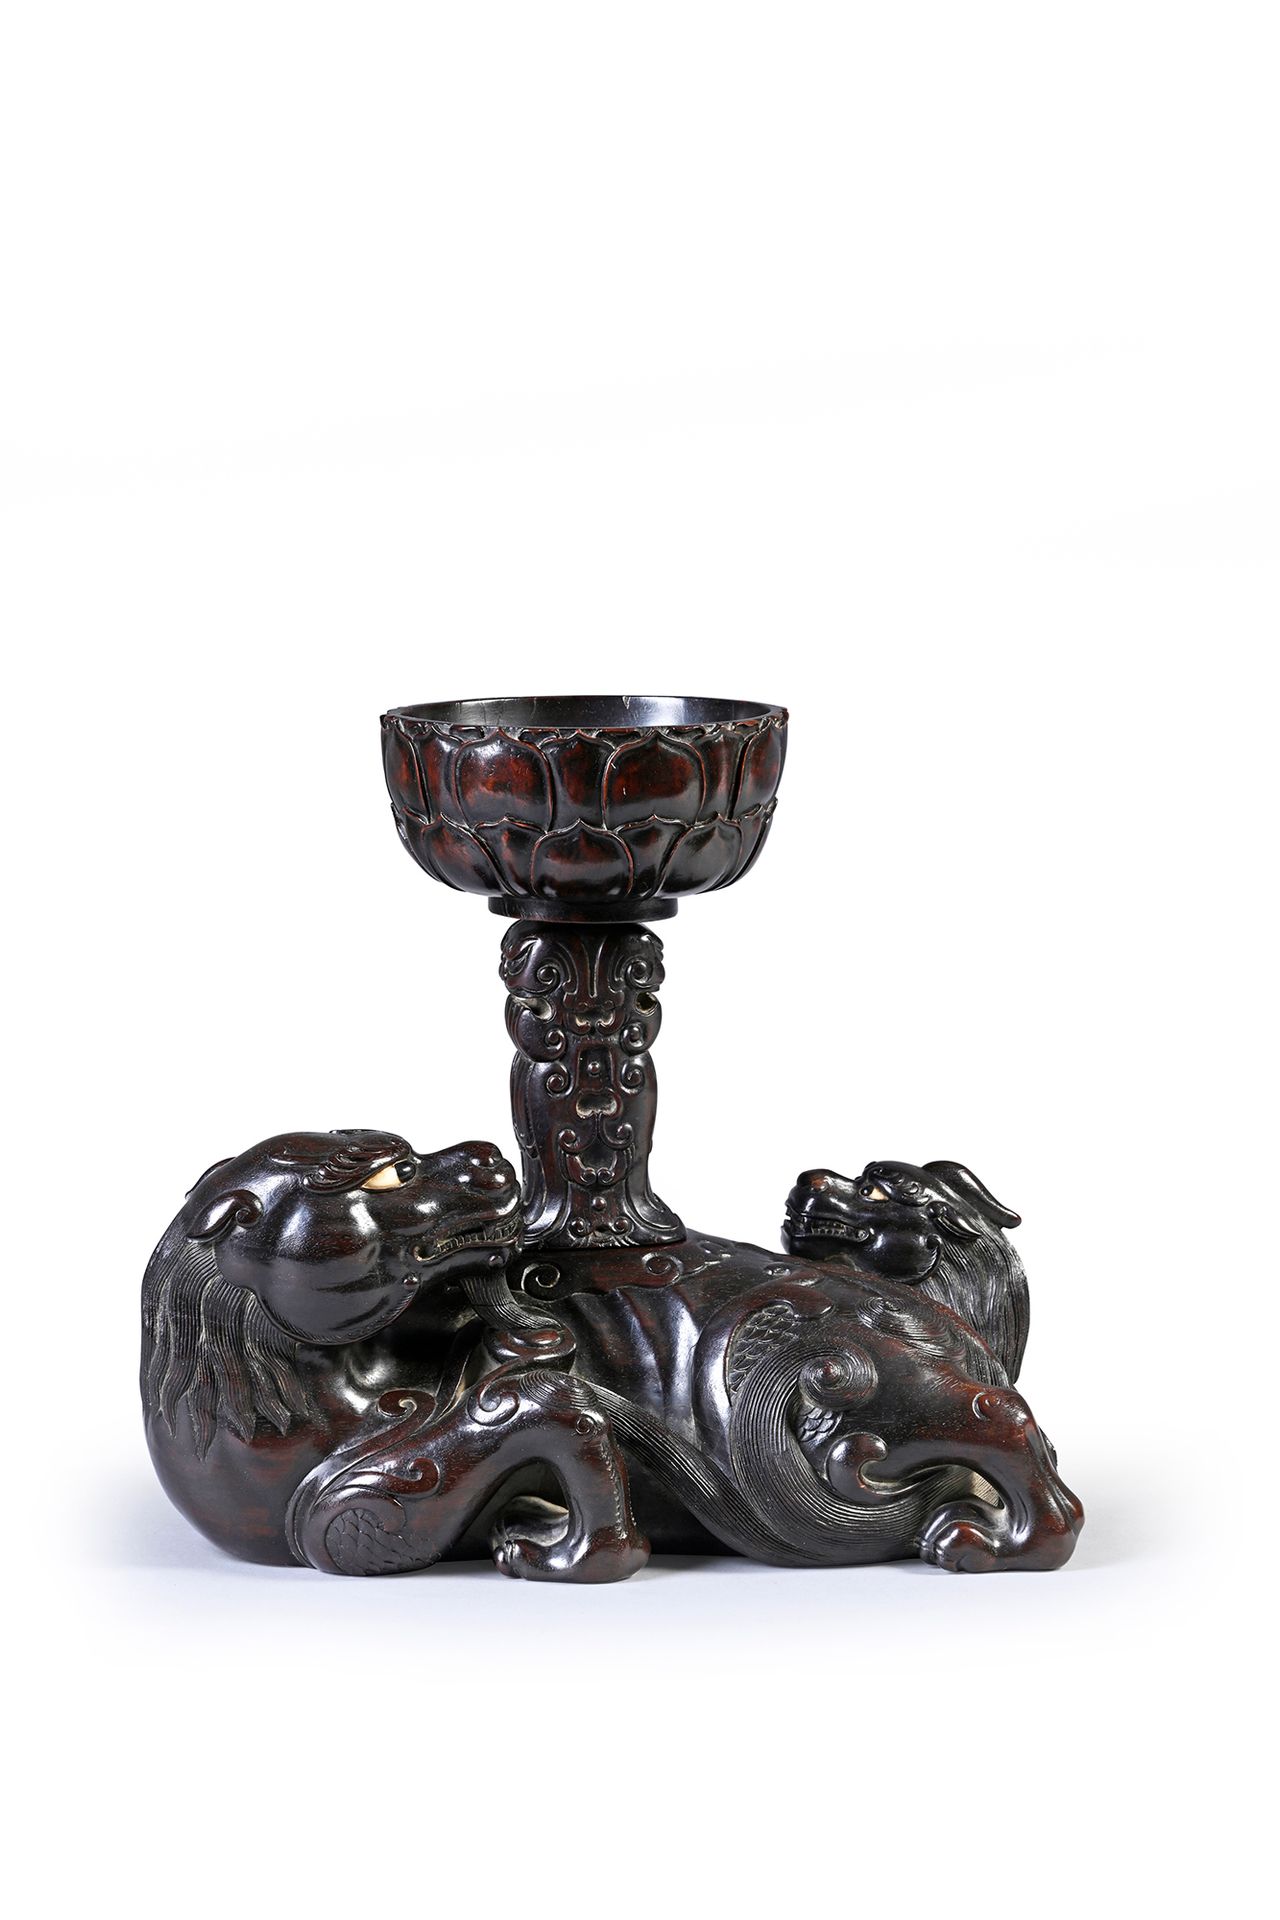 CHINE, Milieu de la dynastie Qing Interesante candelabro de madera tallada
Tiene&hellip;